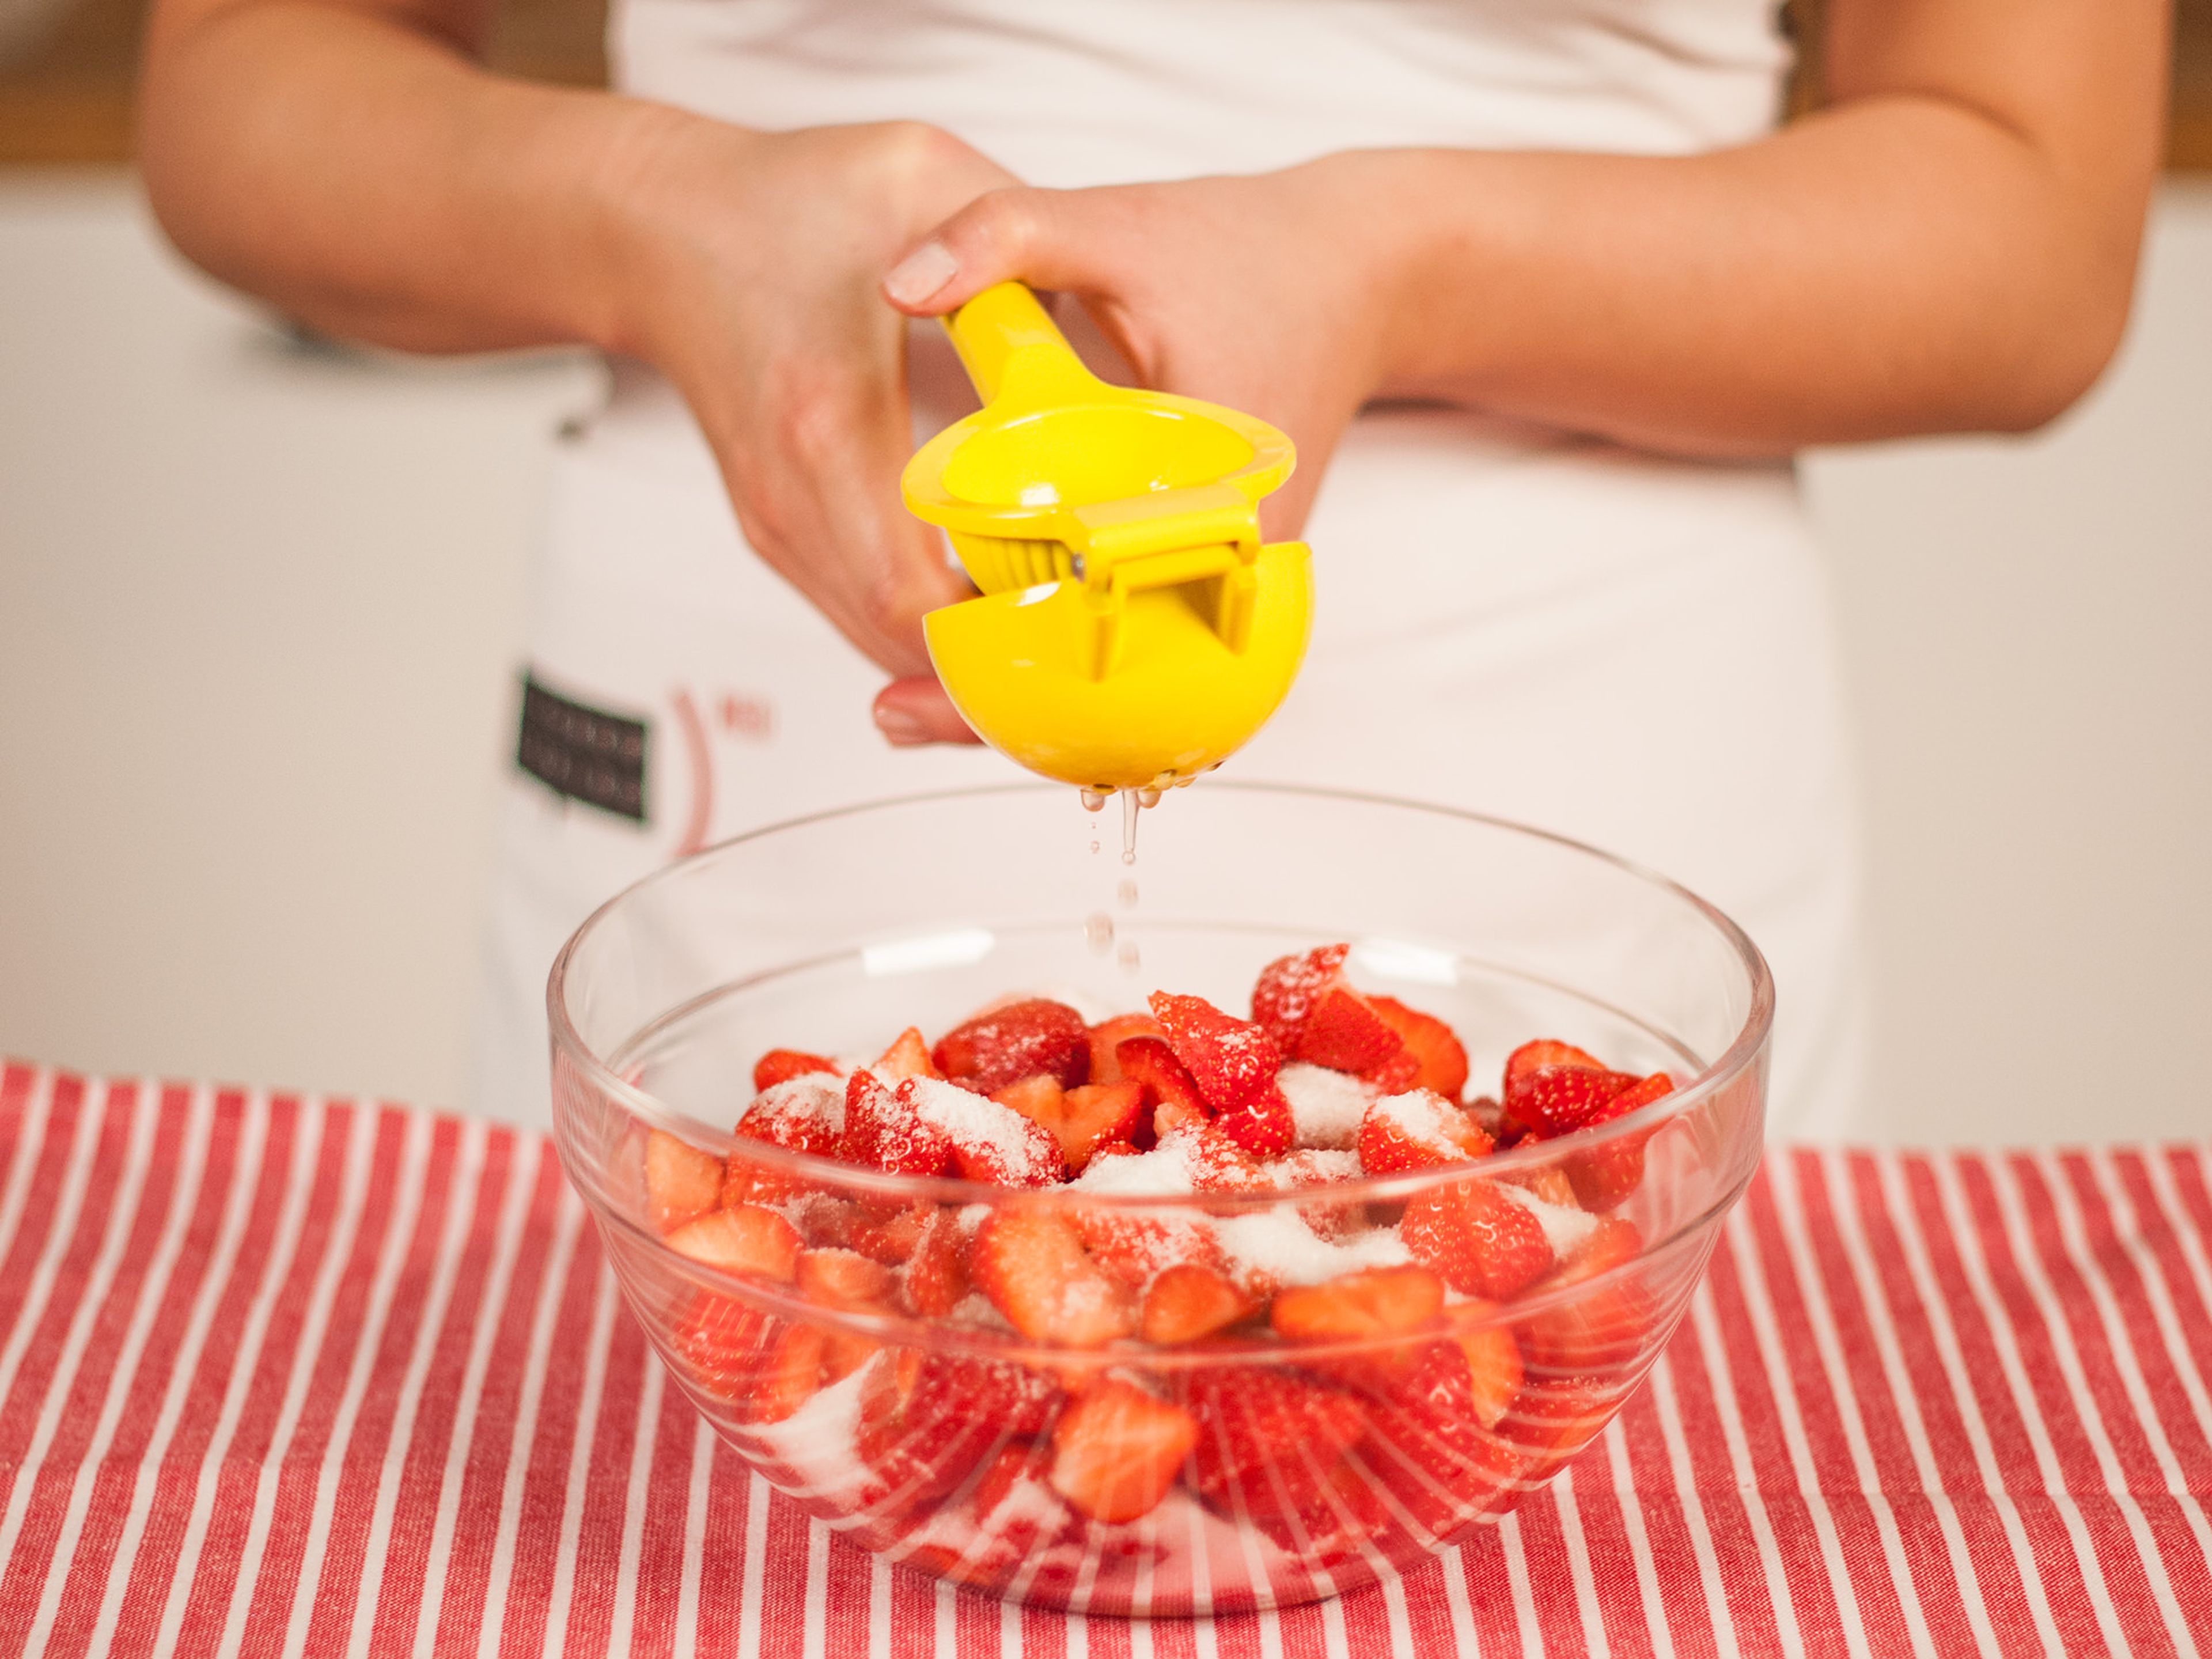 In der Zwischenzeit die Erdbeeren vom Strunk befreien und halbieren. Mit einem Teil des Zuckers, Zitronensaft und Salz marinieren und ca. 1 h ziehen lassen. Gelegentlich umrühren.